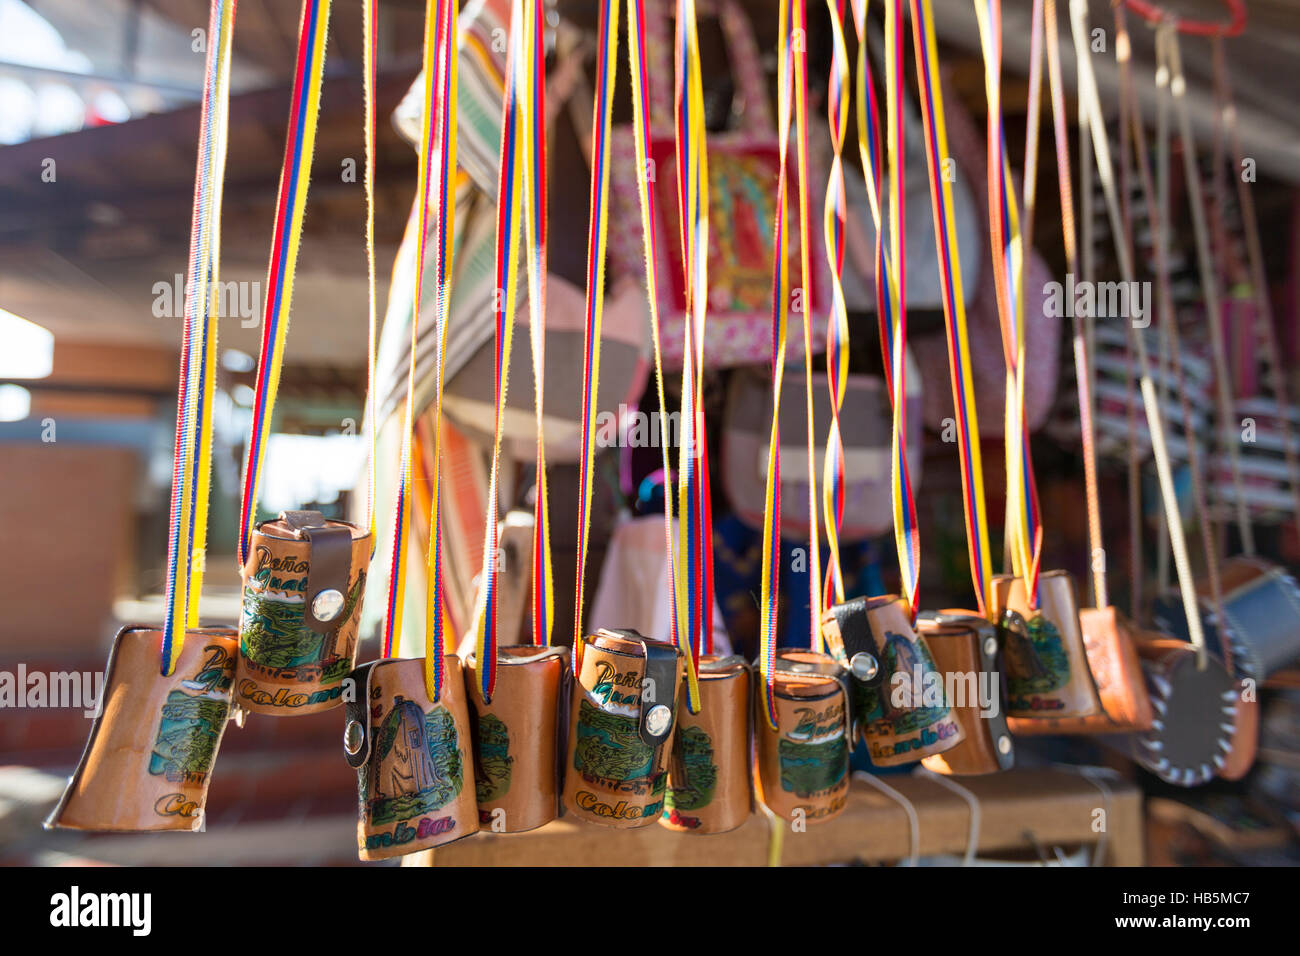 Taschen in Handarbeit aus Leder zum Verkauf in Guatape Markt, Kolumbien  Stockfotografie - Alamy